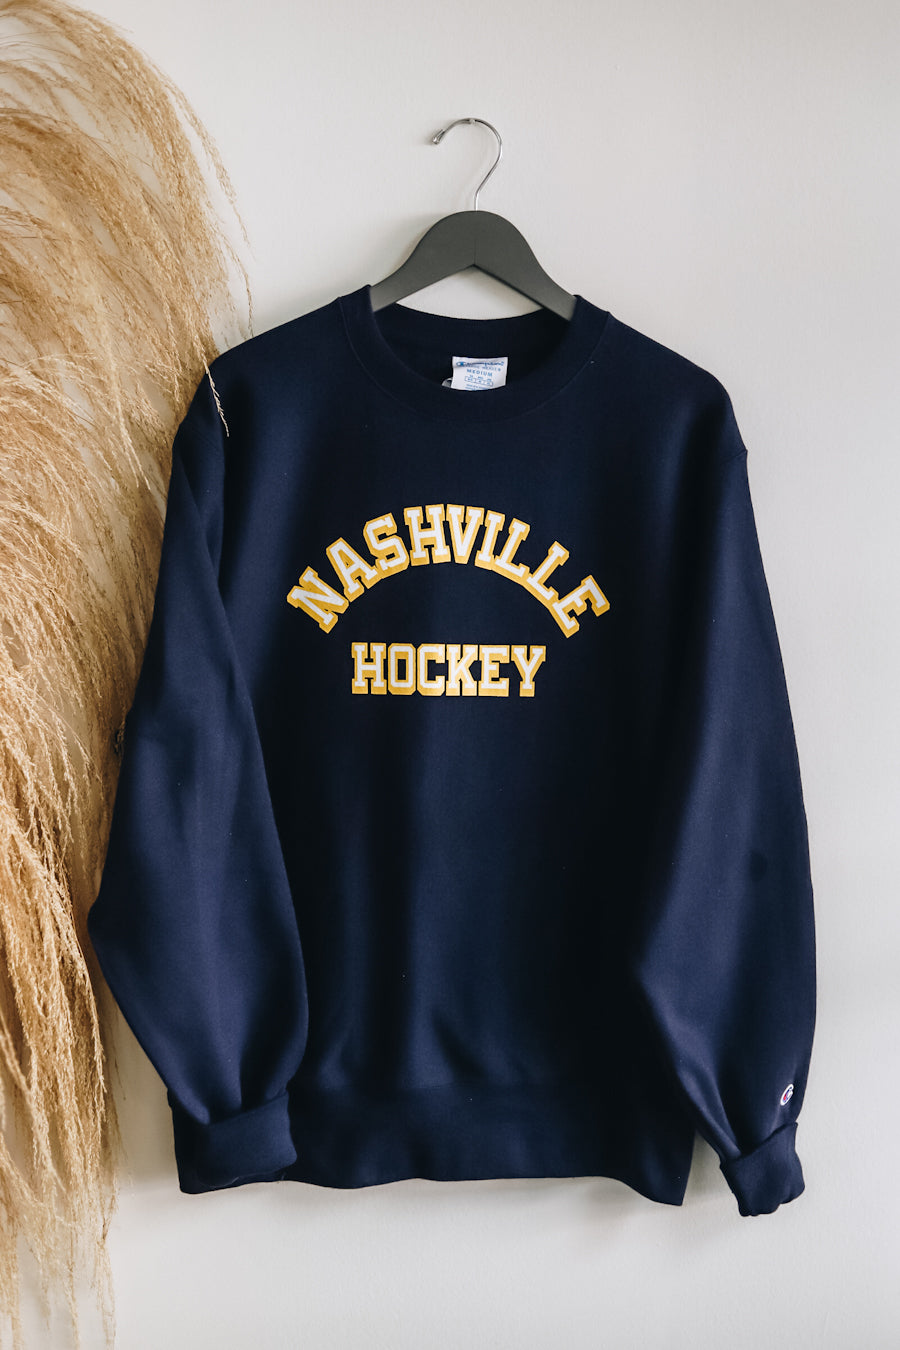 Nashville Hockey Crew [Navy]